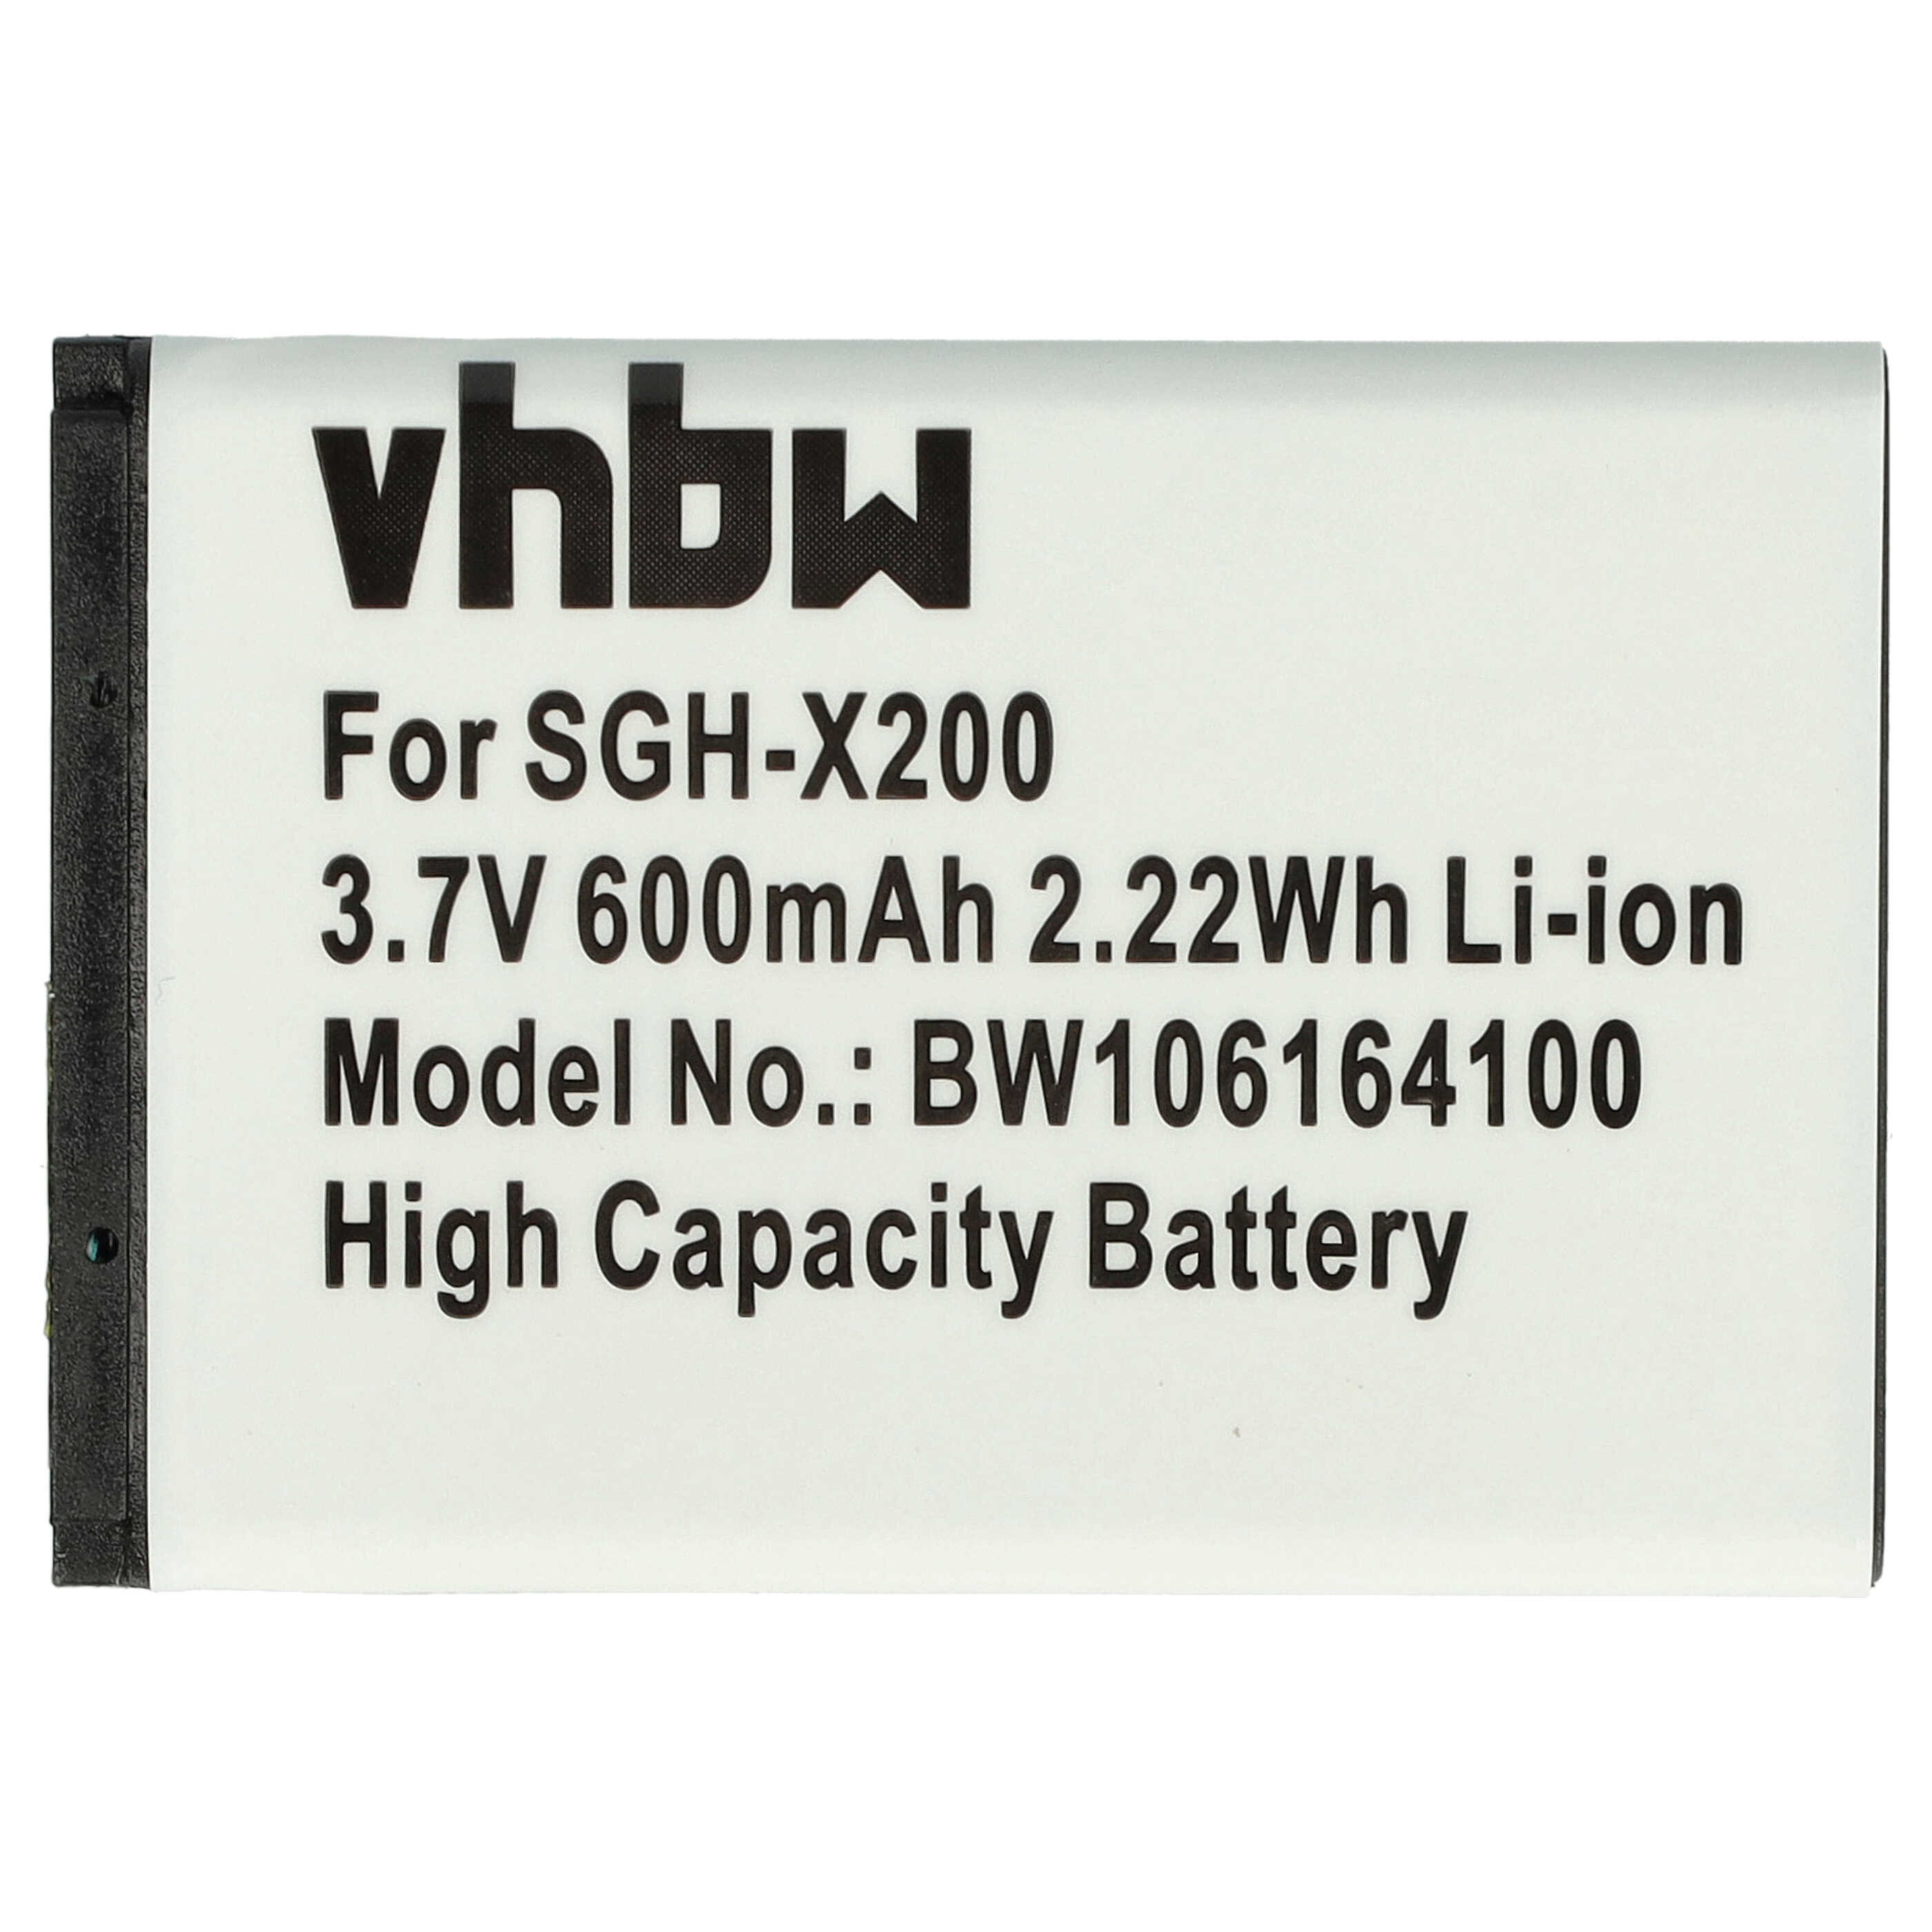 Akumulator Bateria do smartfona komórki zam. Samsung AB043446LA, AB043446BC, AB043446BE - 600mAh, 3,7V, Li-Ion